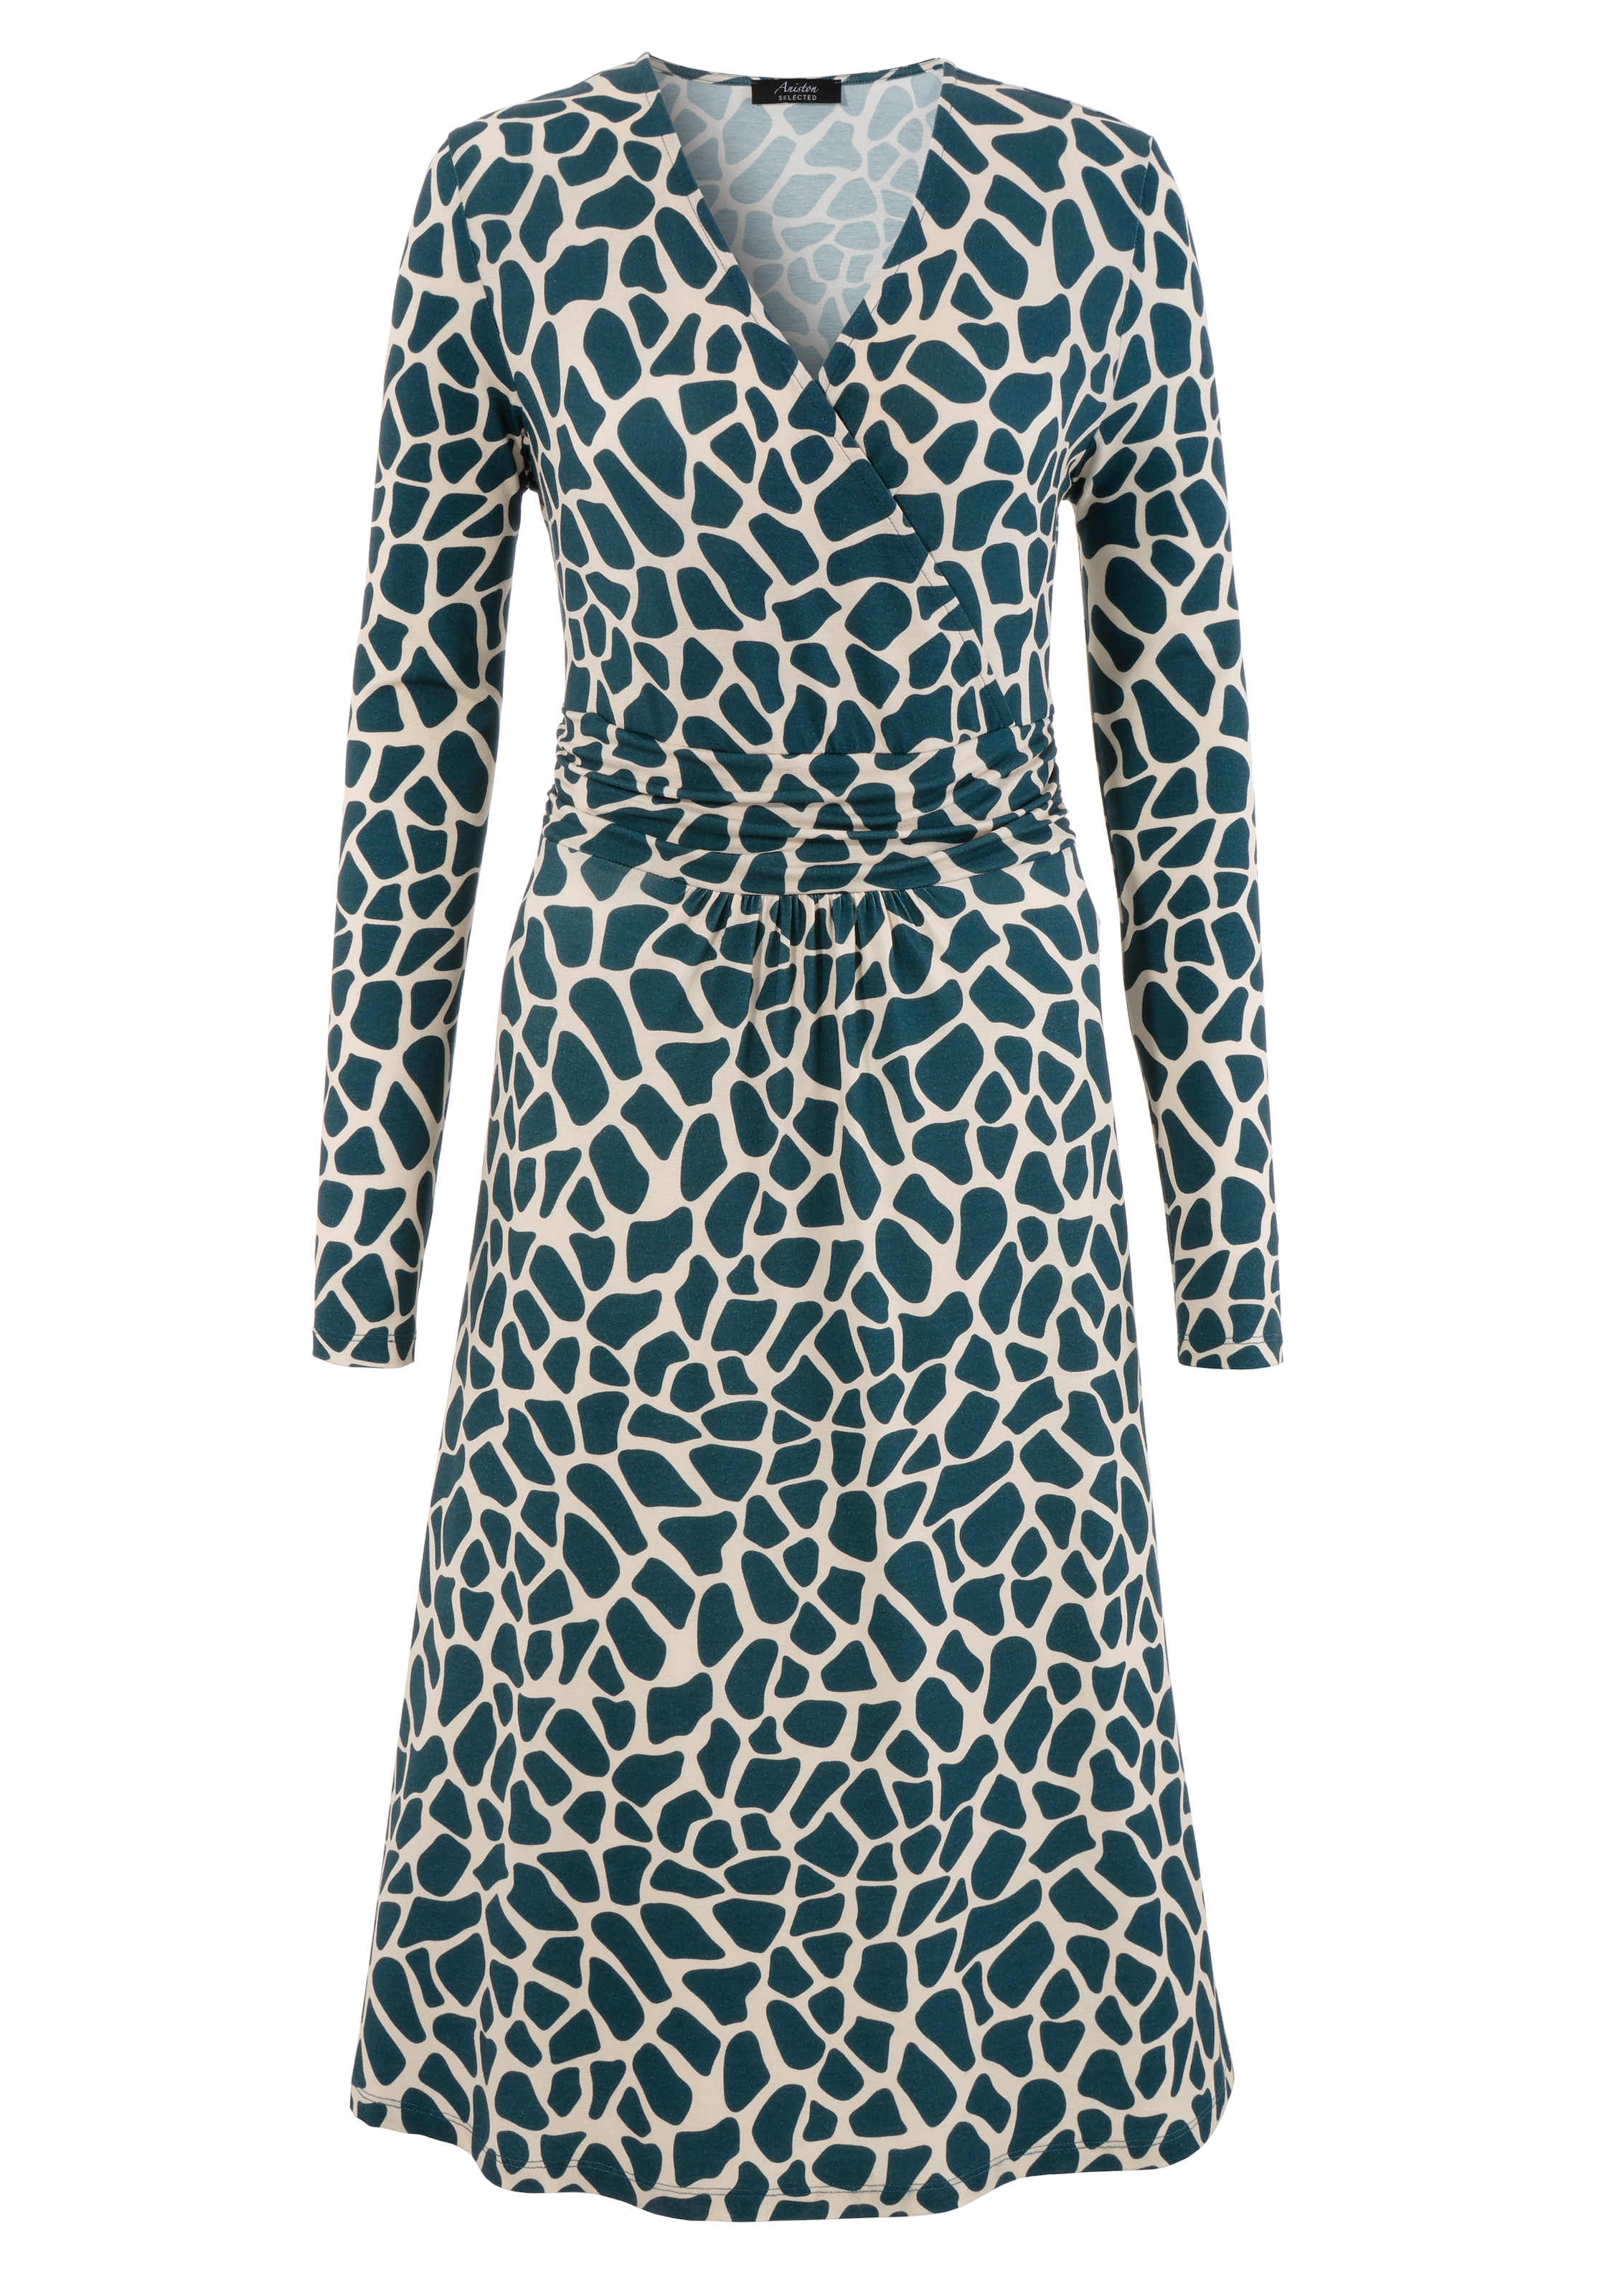 ♕ Aniston SELECTED Jerseykleid, versandkostenfrei farbigem animal-print mit auf